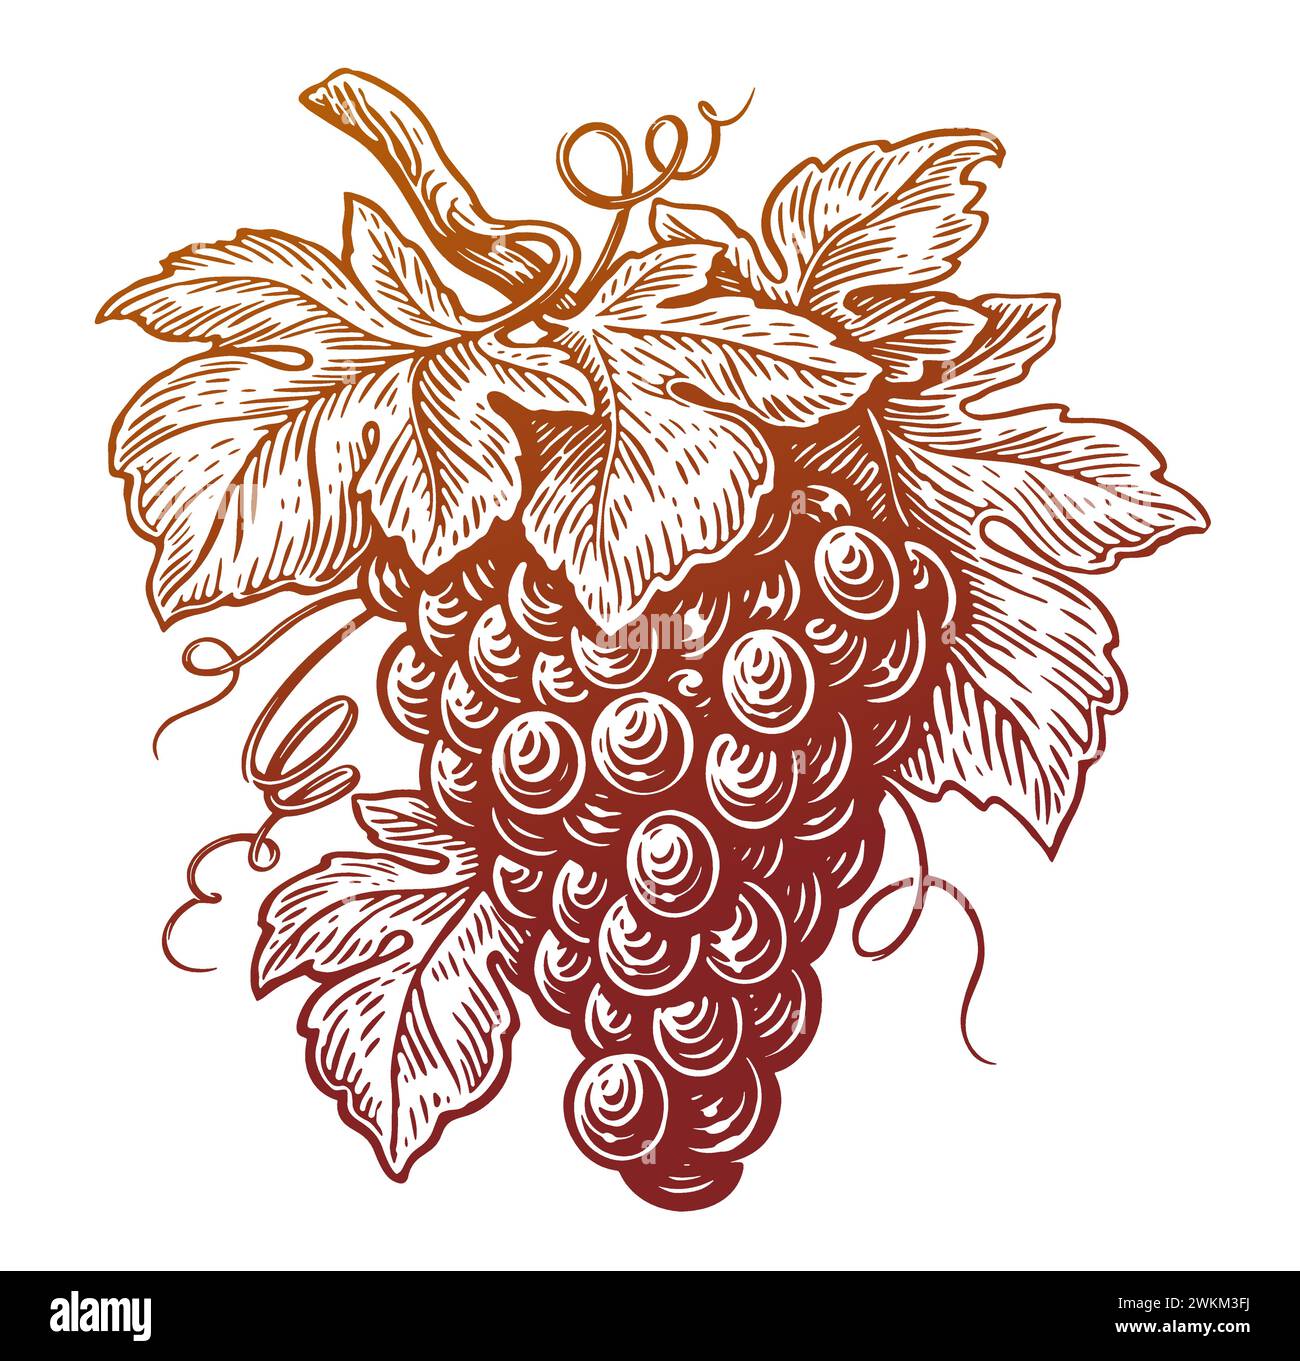 Branche de raisin avec des feuilles et des baies. Dessin à la main vigne dans le style de gravure vintage. Illustration vectorielle d'esquisse Illustration de Vecteur